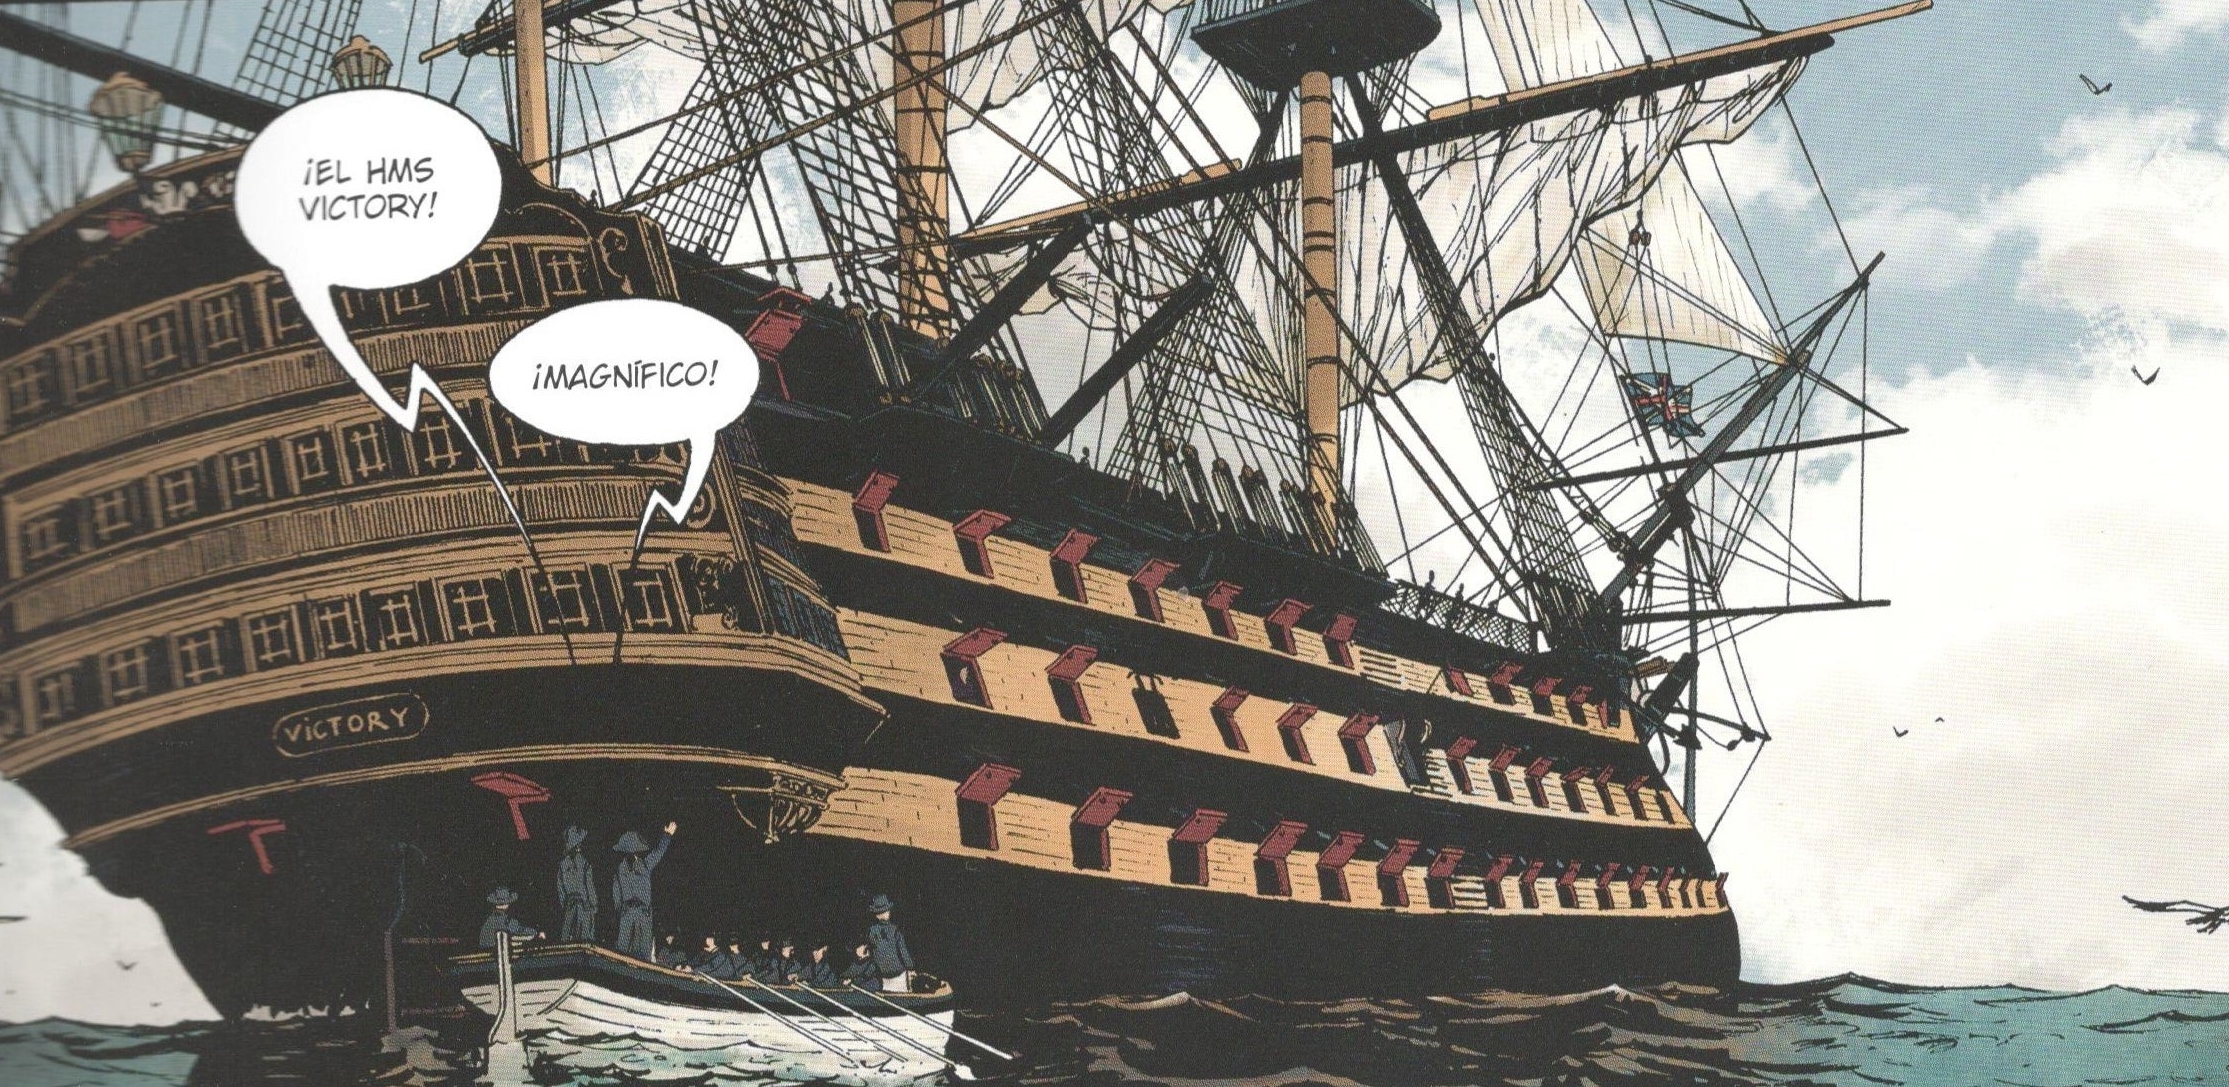 Las grandes batallas navales contadas en cómic